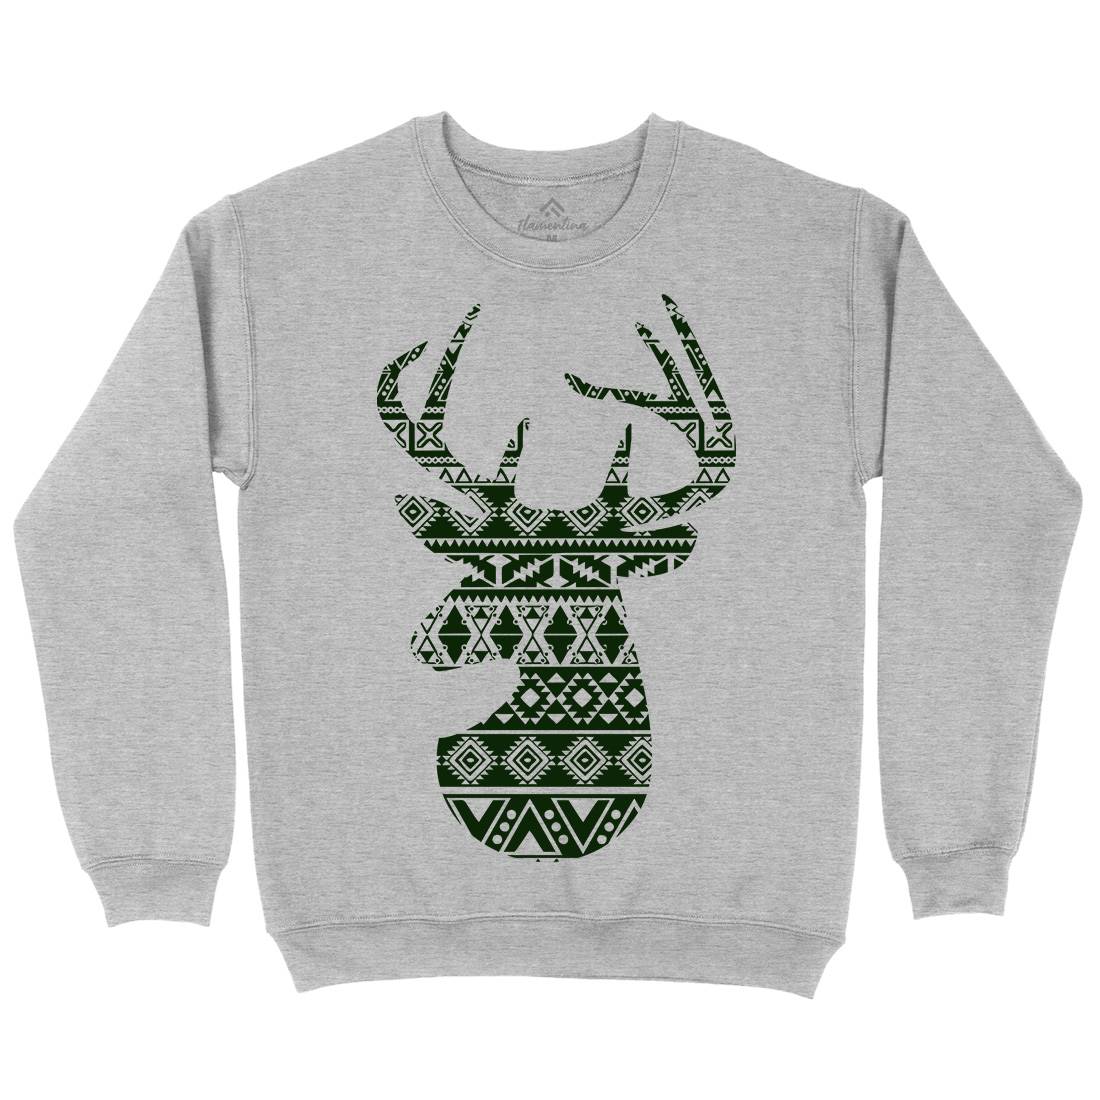 Deer Kids Crew Neck Sweatshirt Animals B024